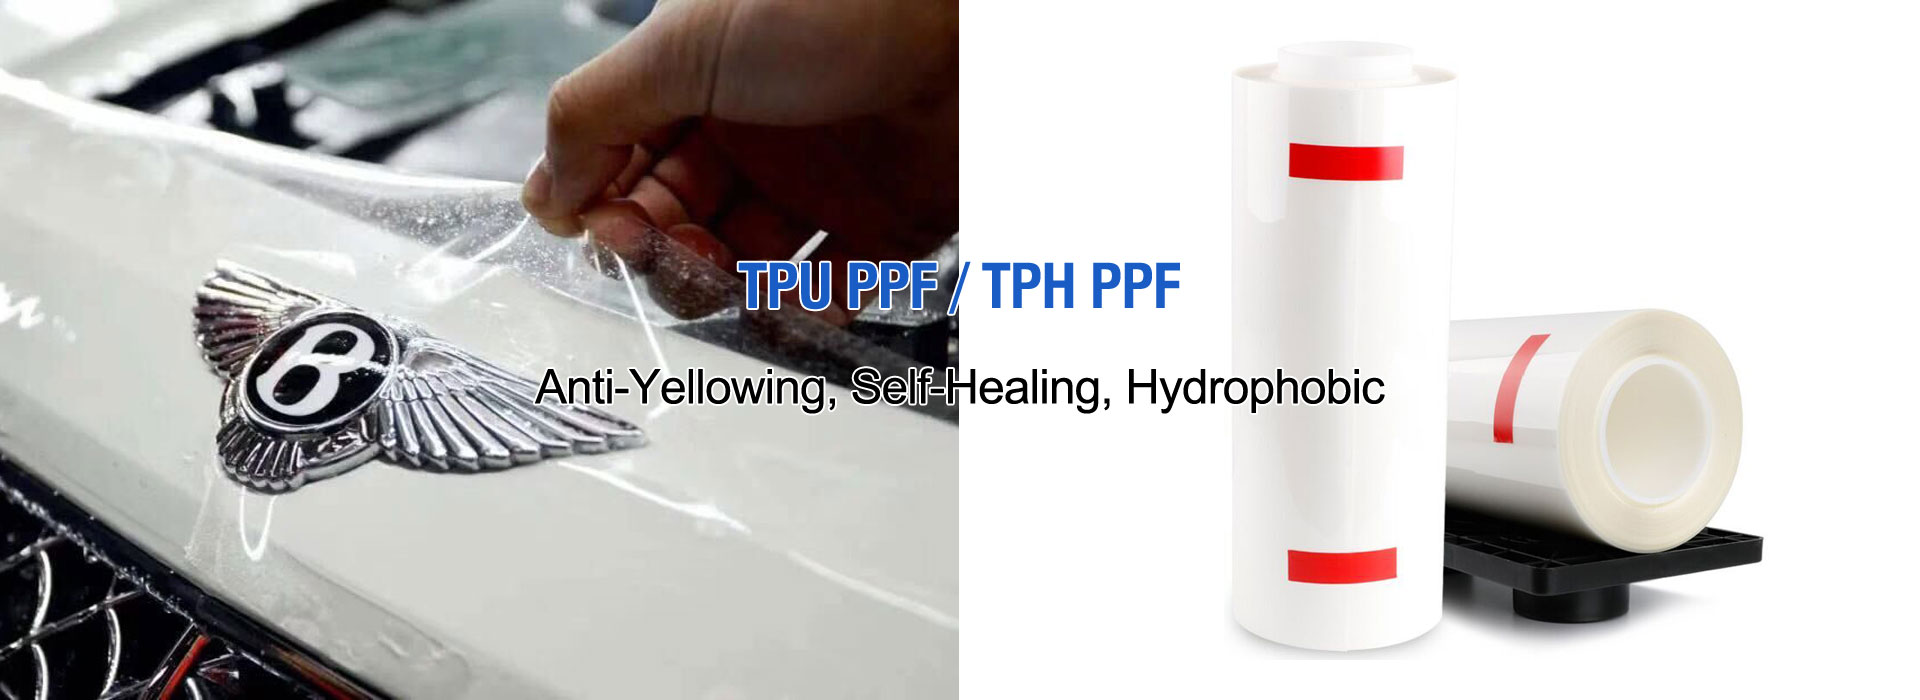 TPU PPE/TPH PPE প্রস্তুতকারক